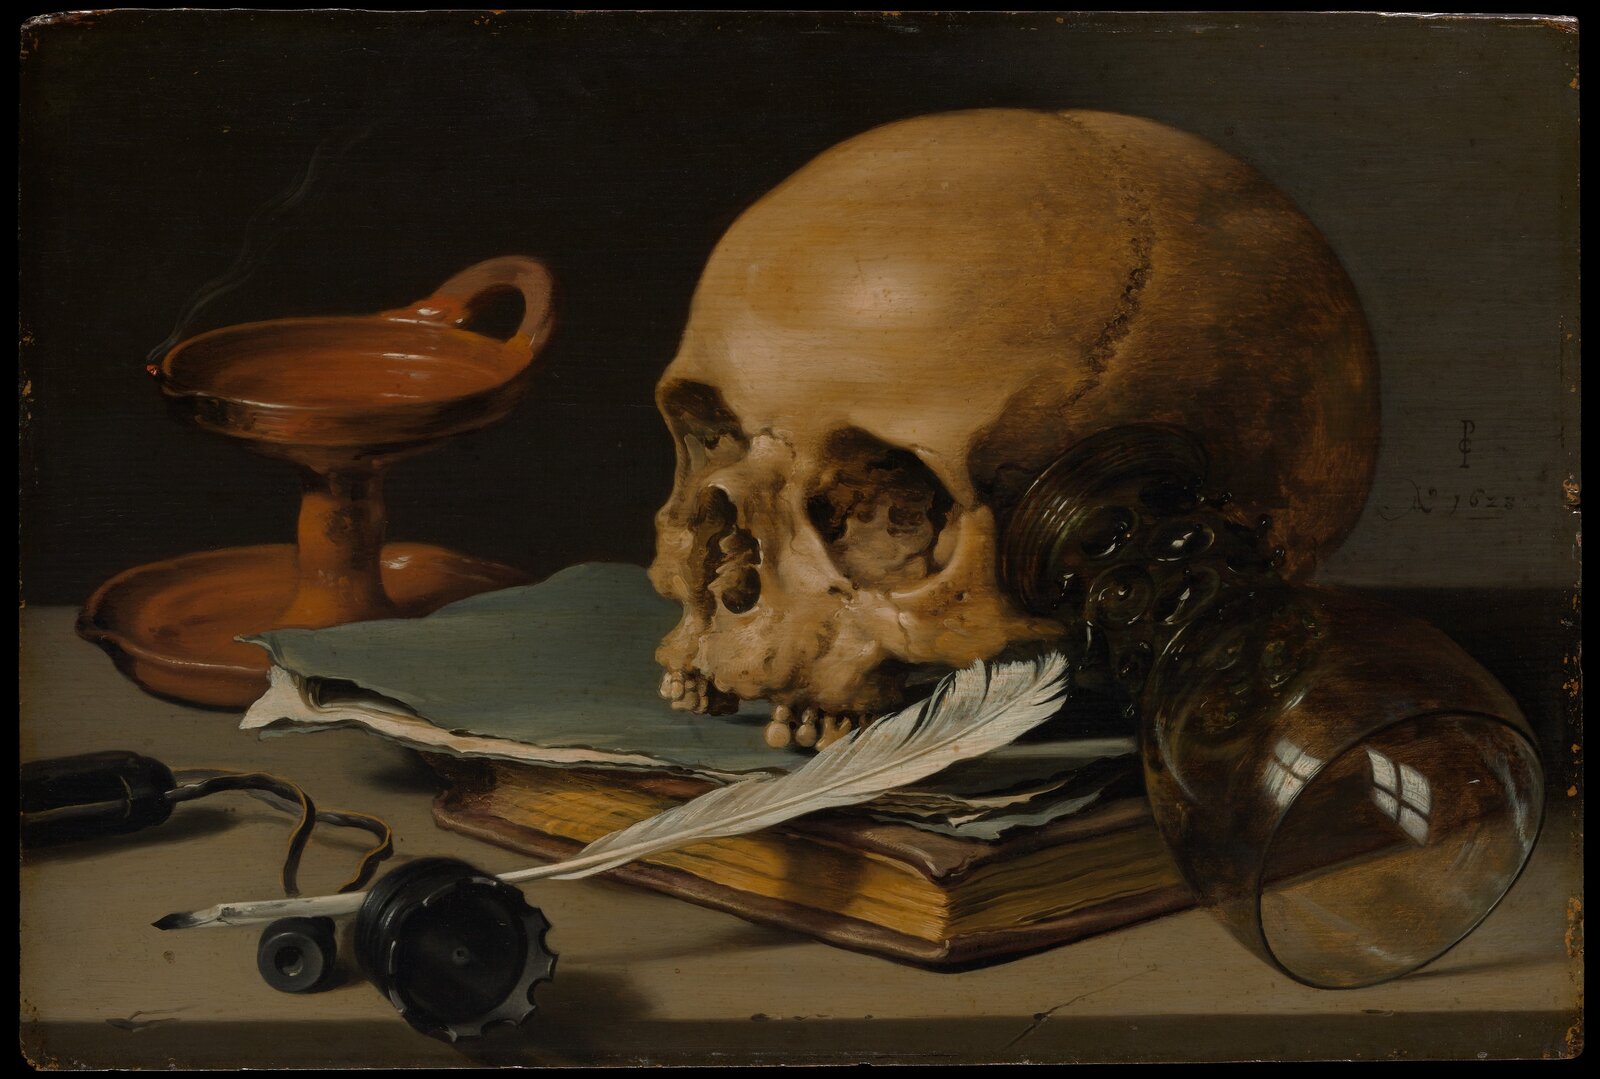 Martwa natura z czaszką i piórem Źródło: Piteter Claesz, Martwa natura z czaszką i piórem, 1628, olej na desce, Metropolitan Museum of Art, domena publiczna.